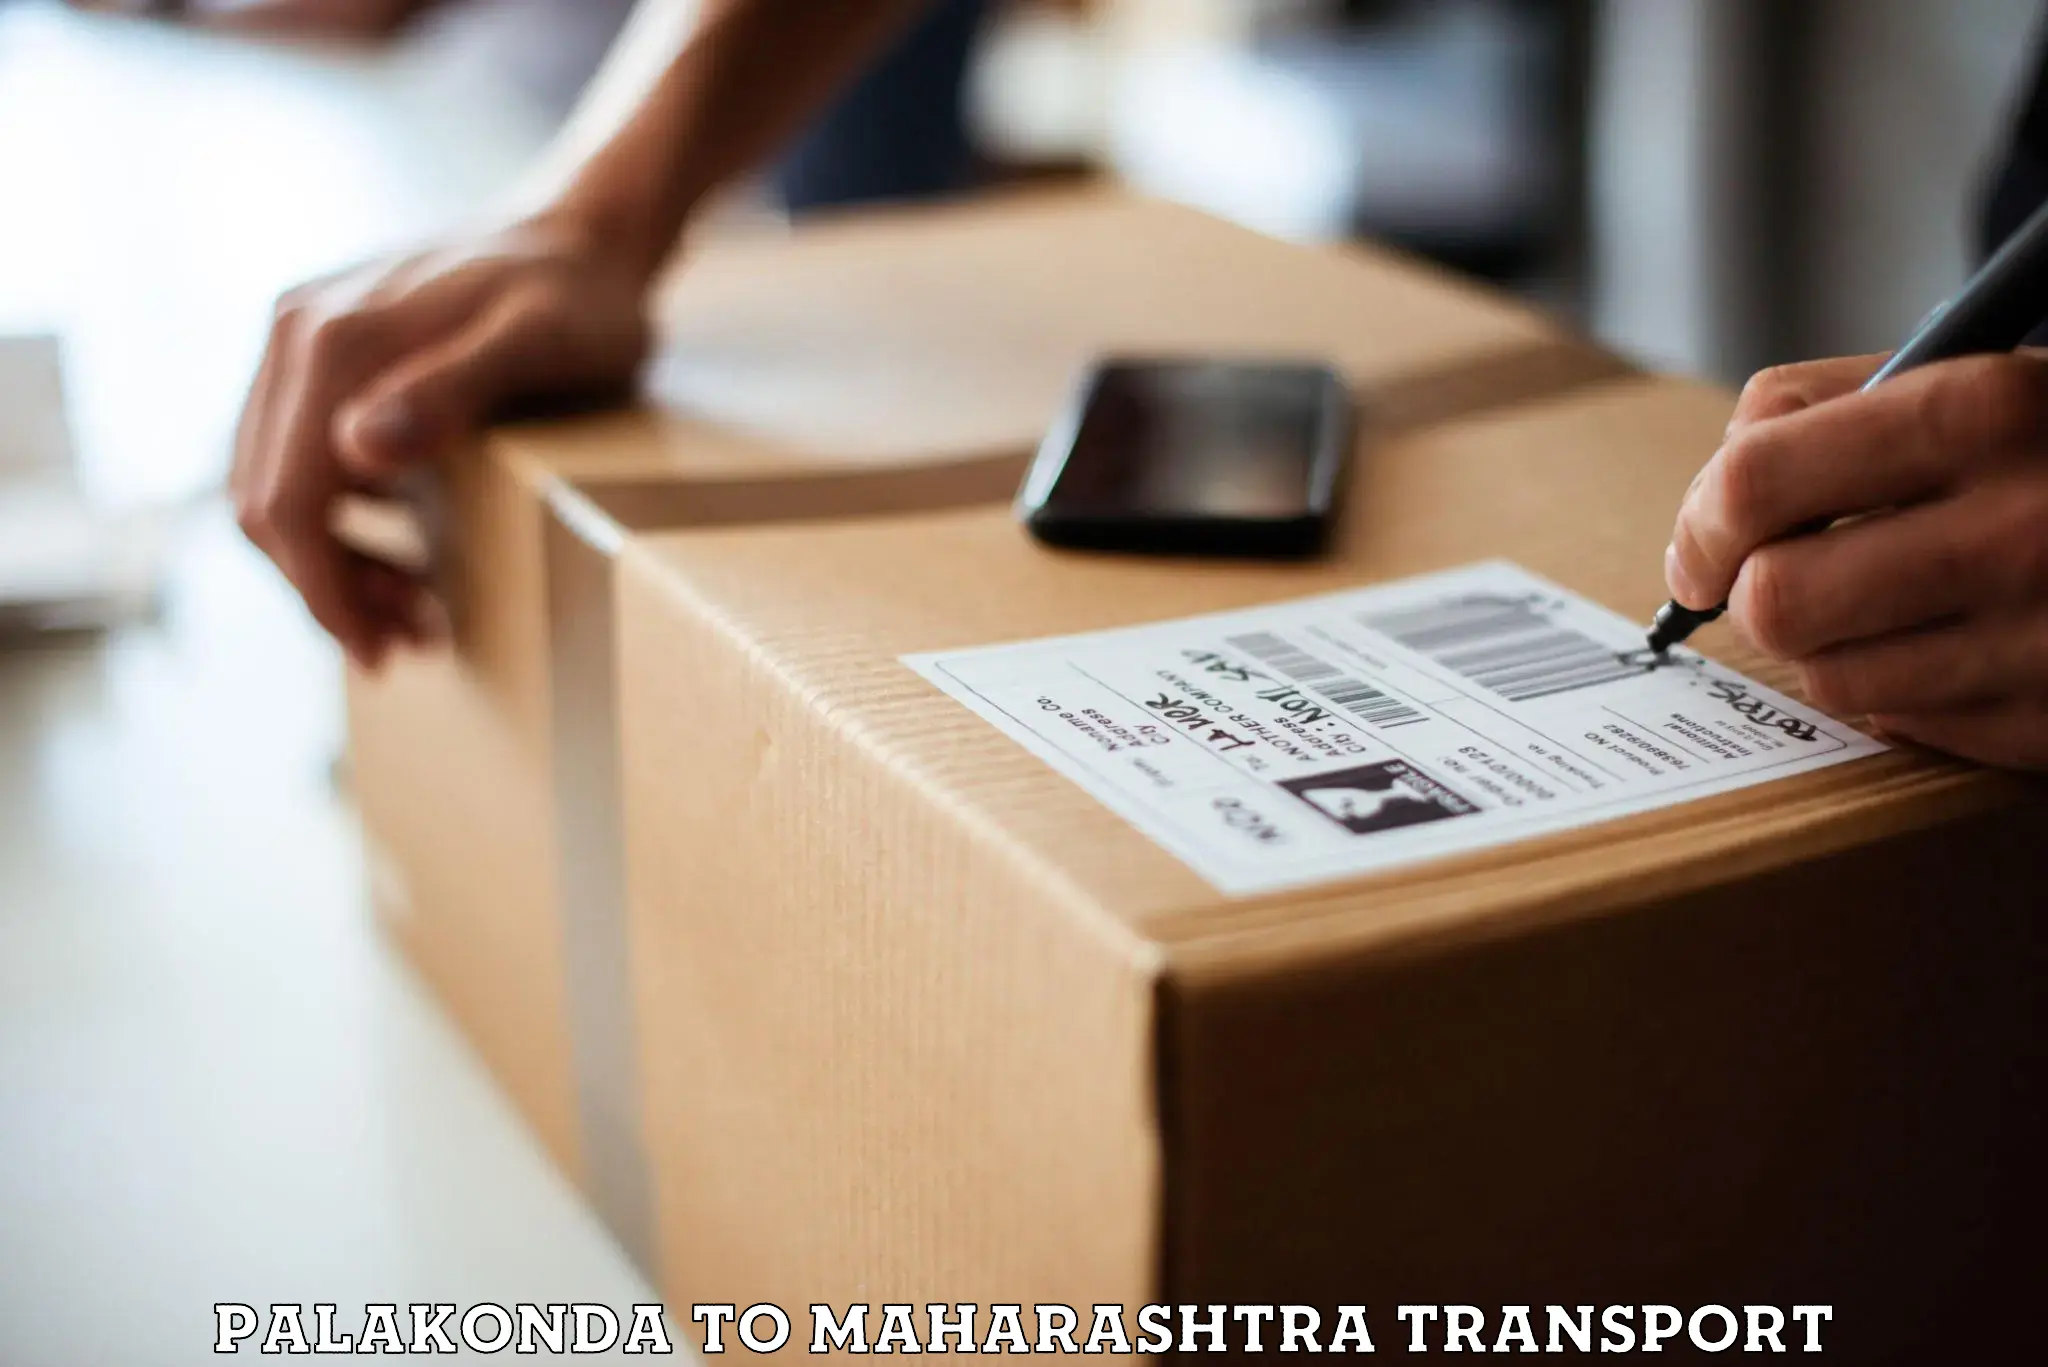 Furniture transport service Palakonda to Hinganghat